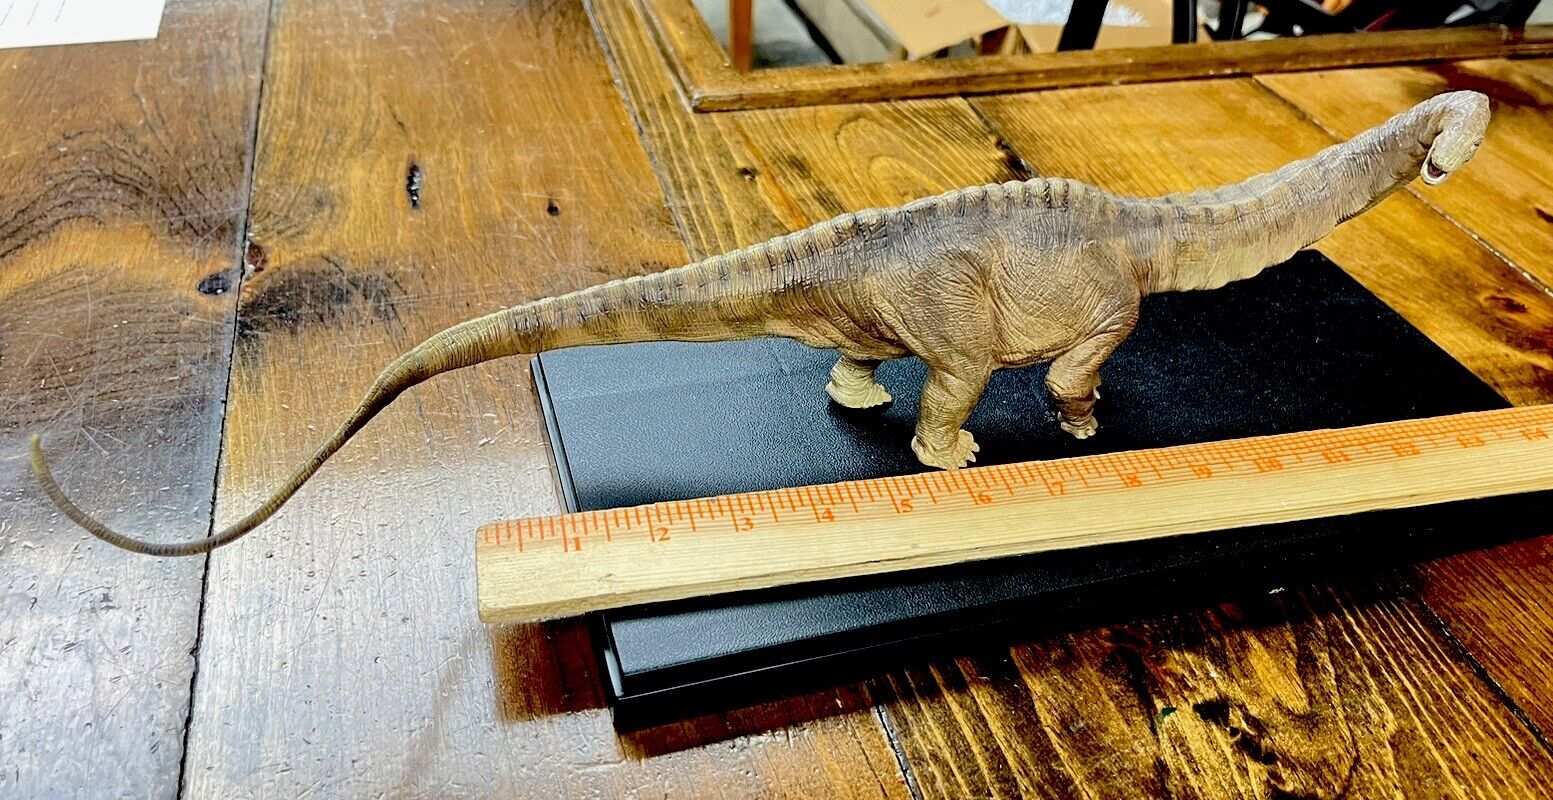 Papo highly regarded Apatosaurus dinosaur model